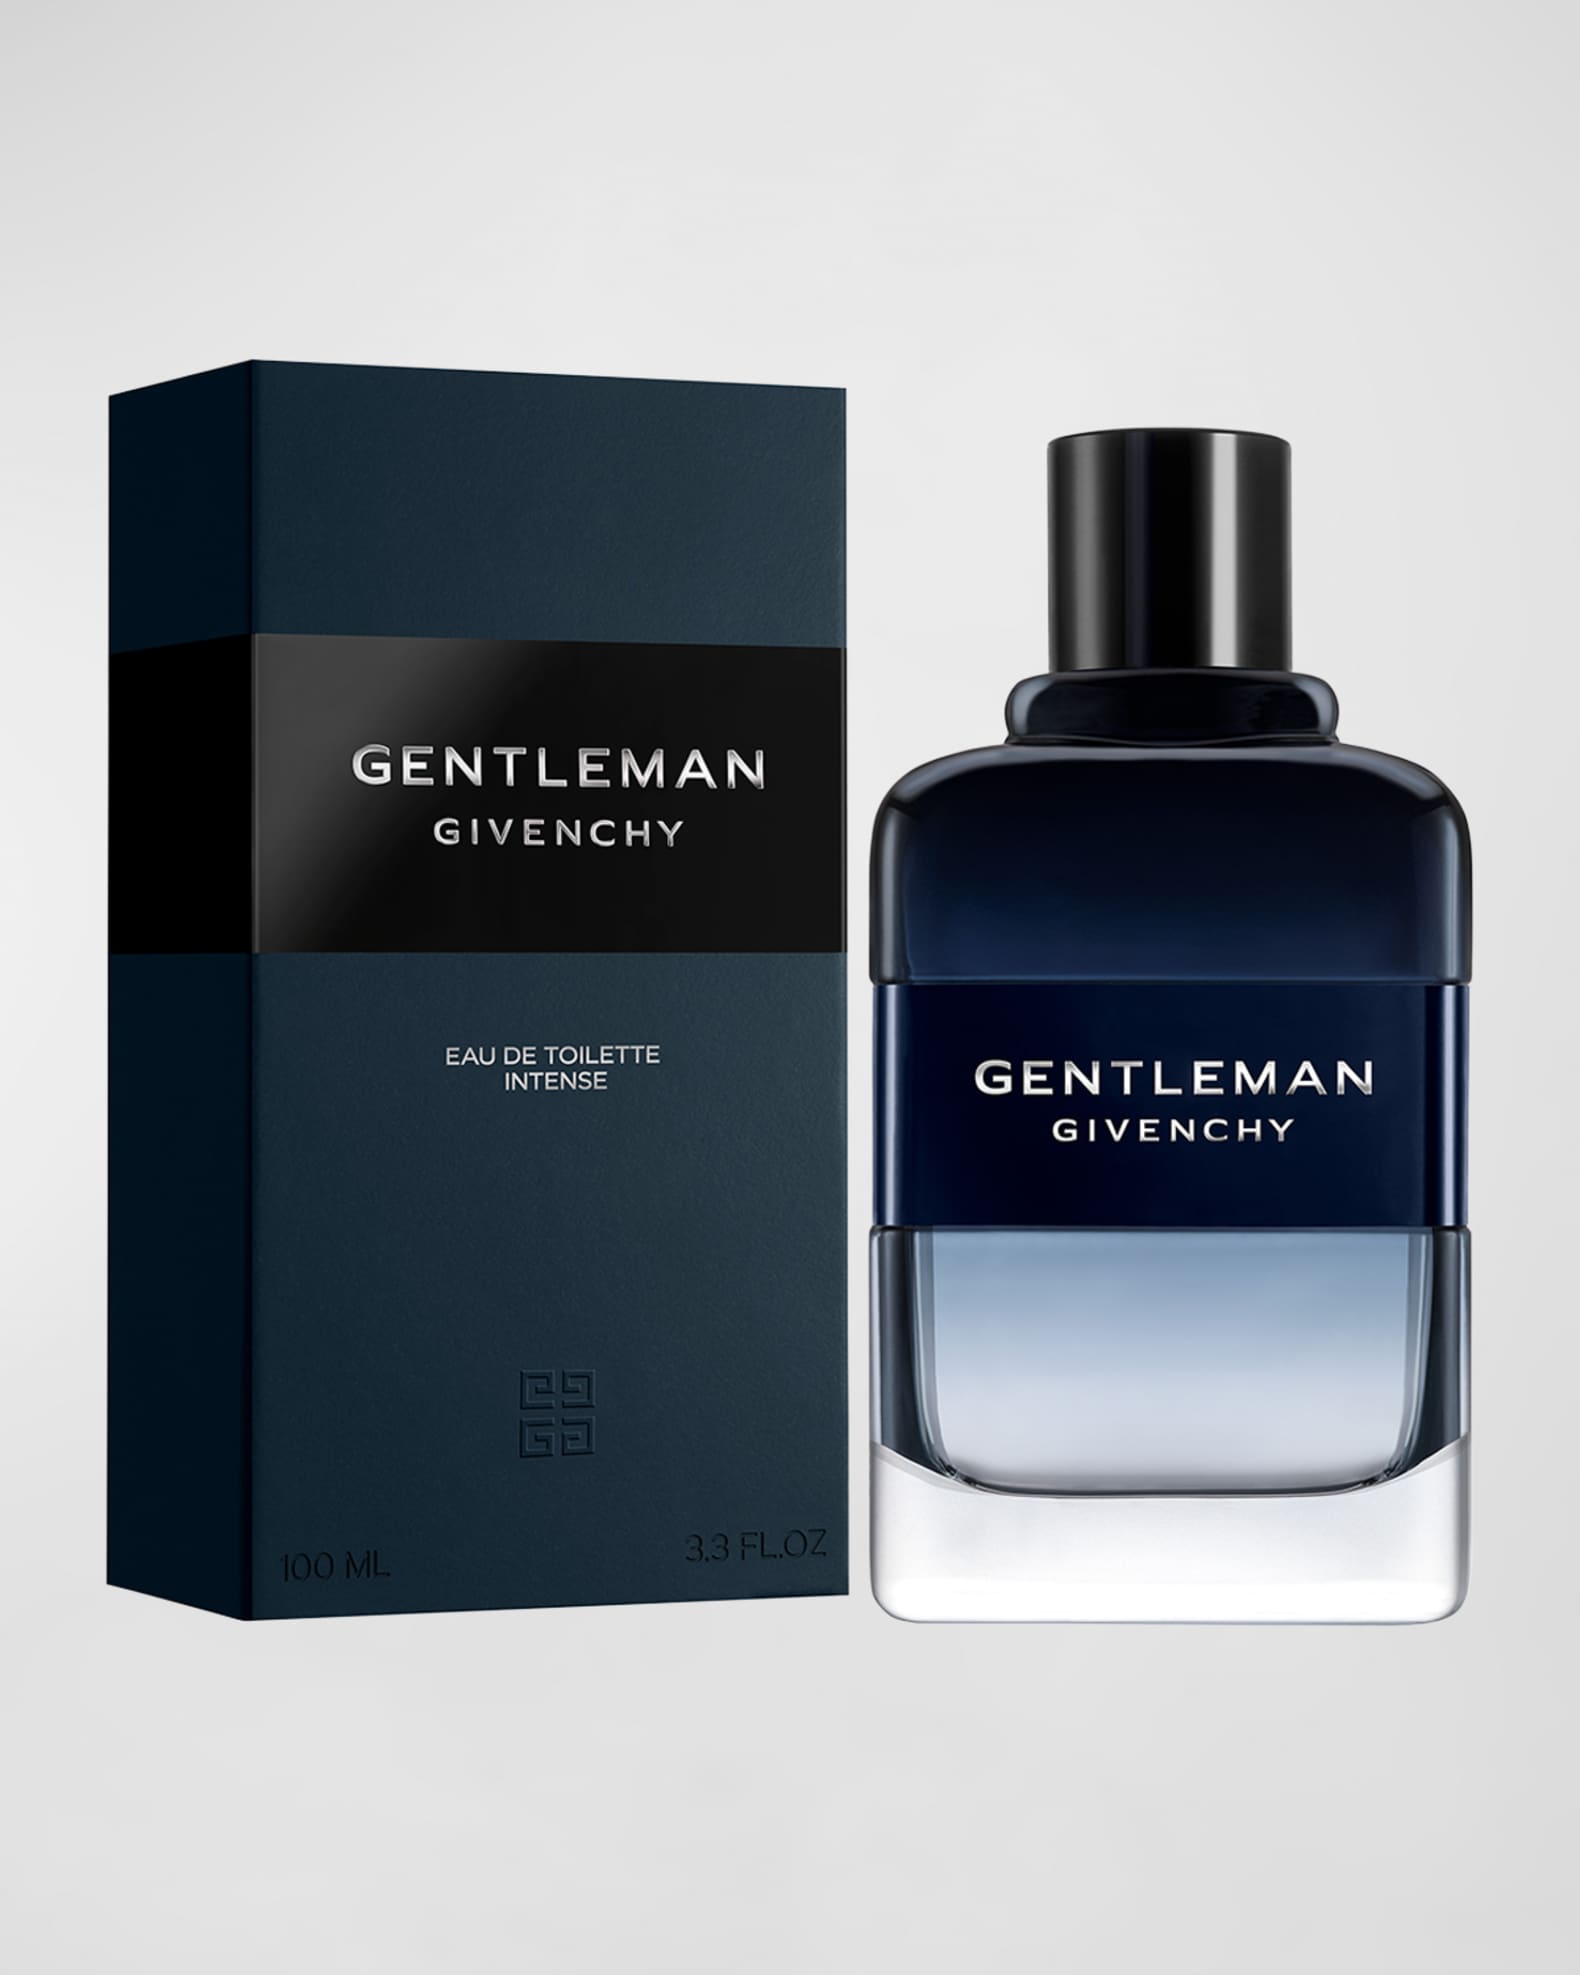 Givenchy 3.4 oz. Gentleman Eau de Toilette Intense | Neiman Marcus